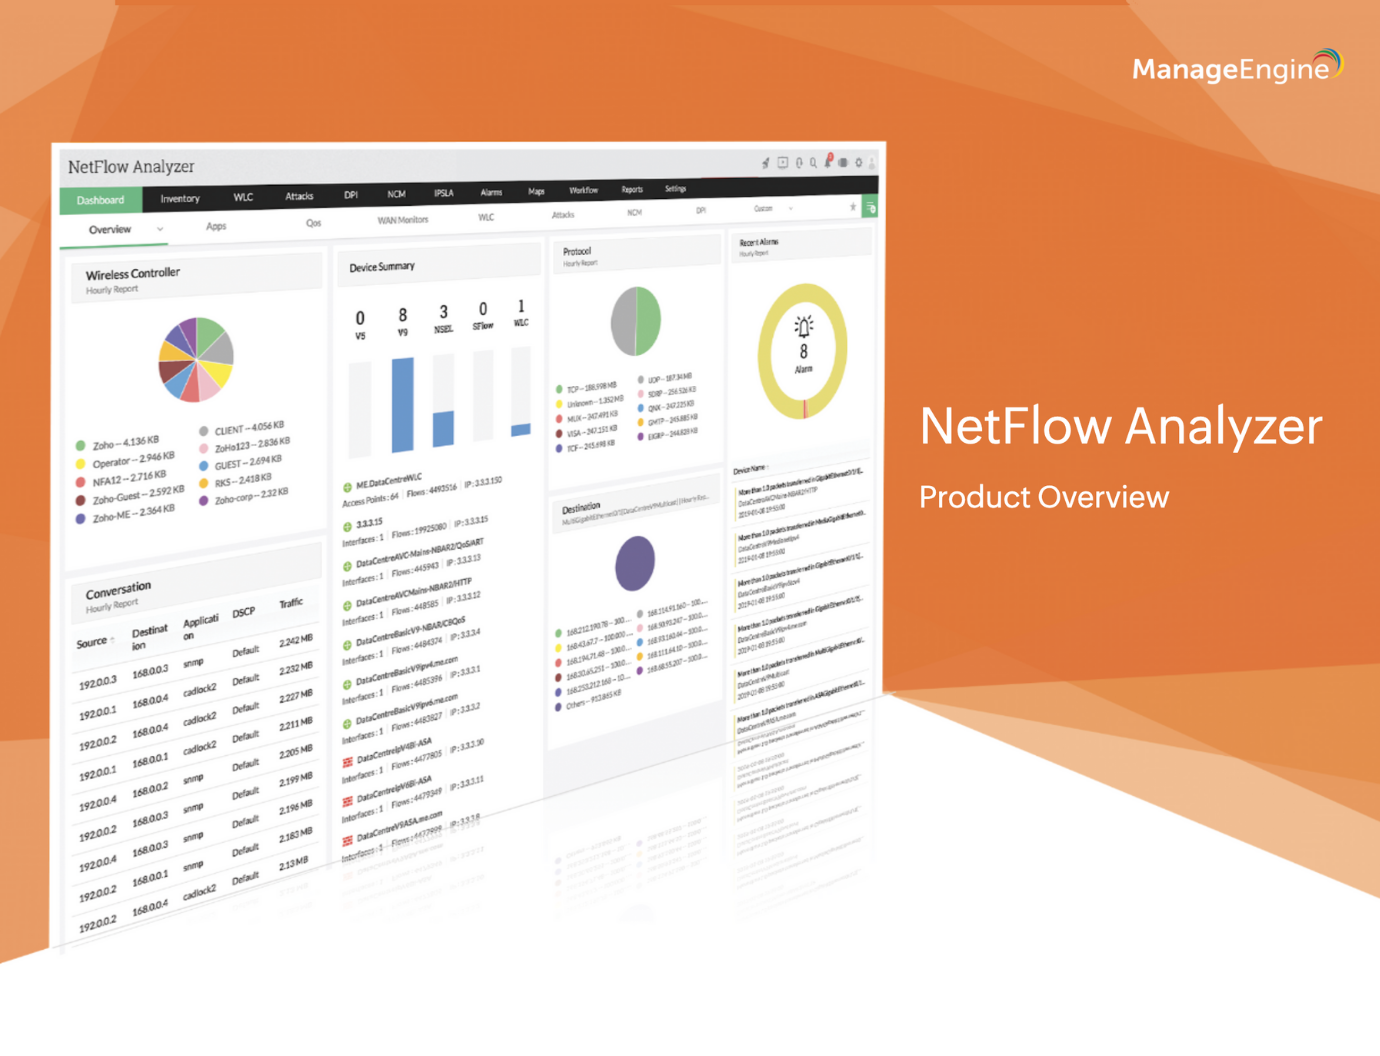 NetFlow Analyzer Product Overview